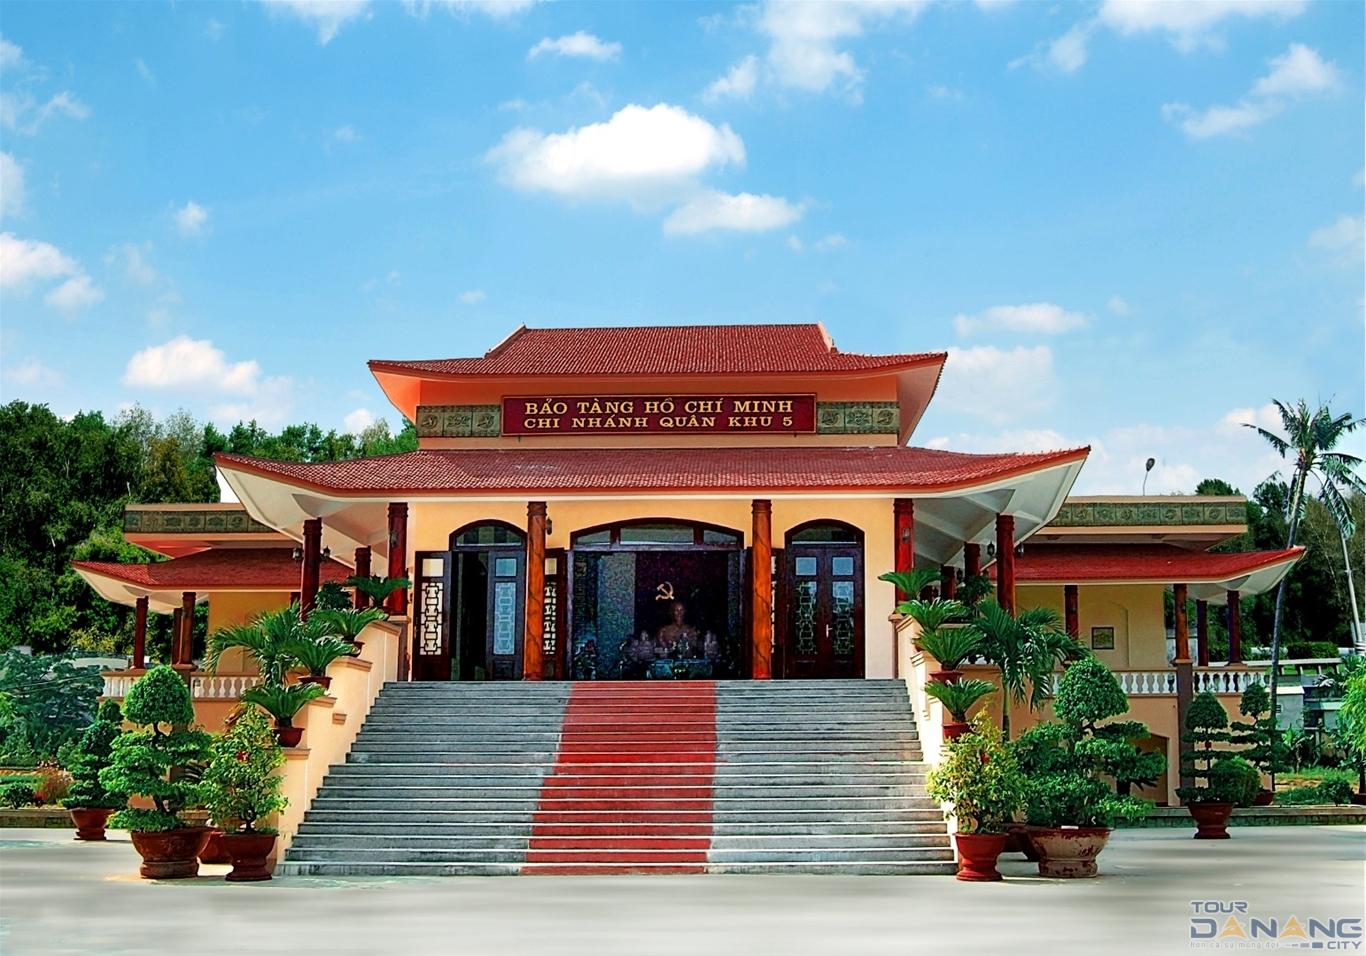 Bảo tàng Hồ Chí Minh Quân Khu 5 Đà Nẵng